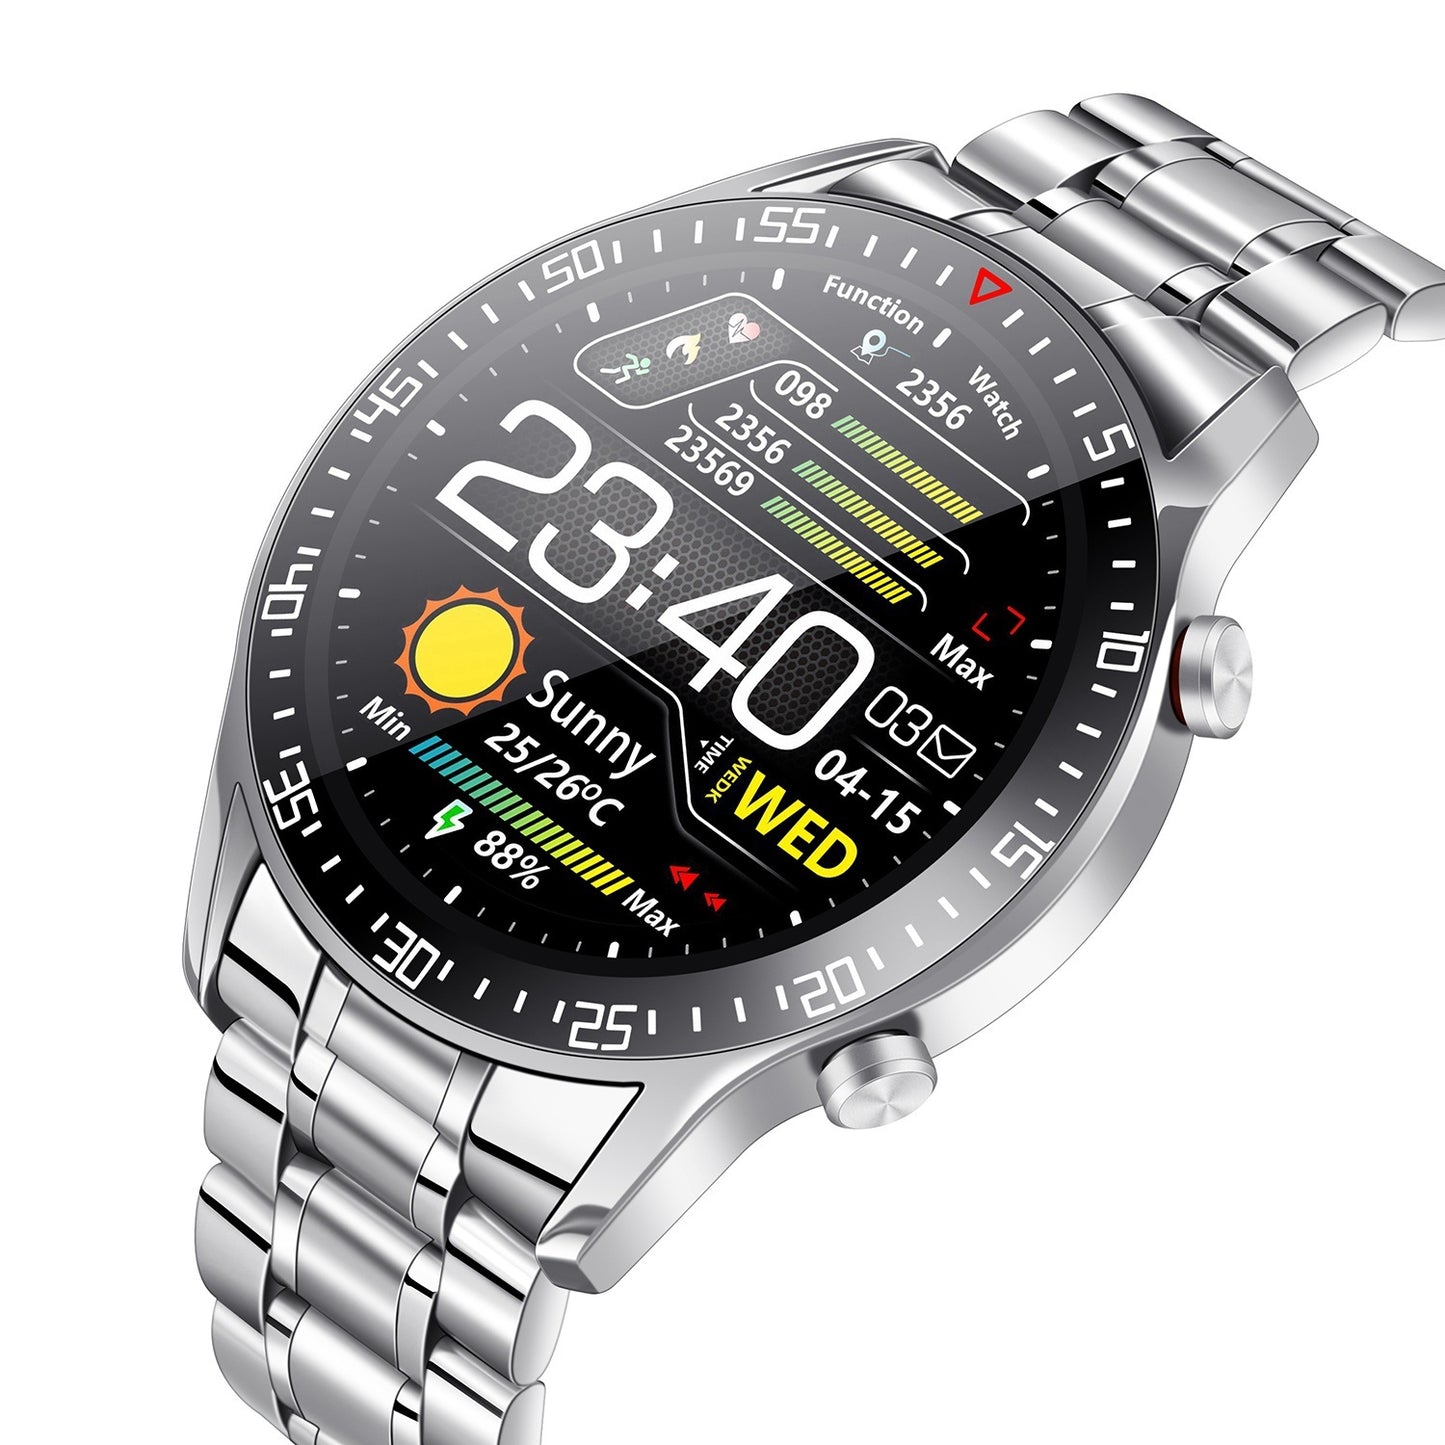 Wireless Smart Watch Fitness Tracker IP68 Waterproof Sport Bracelet